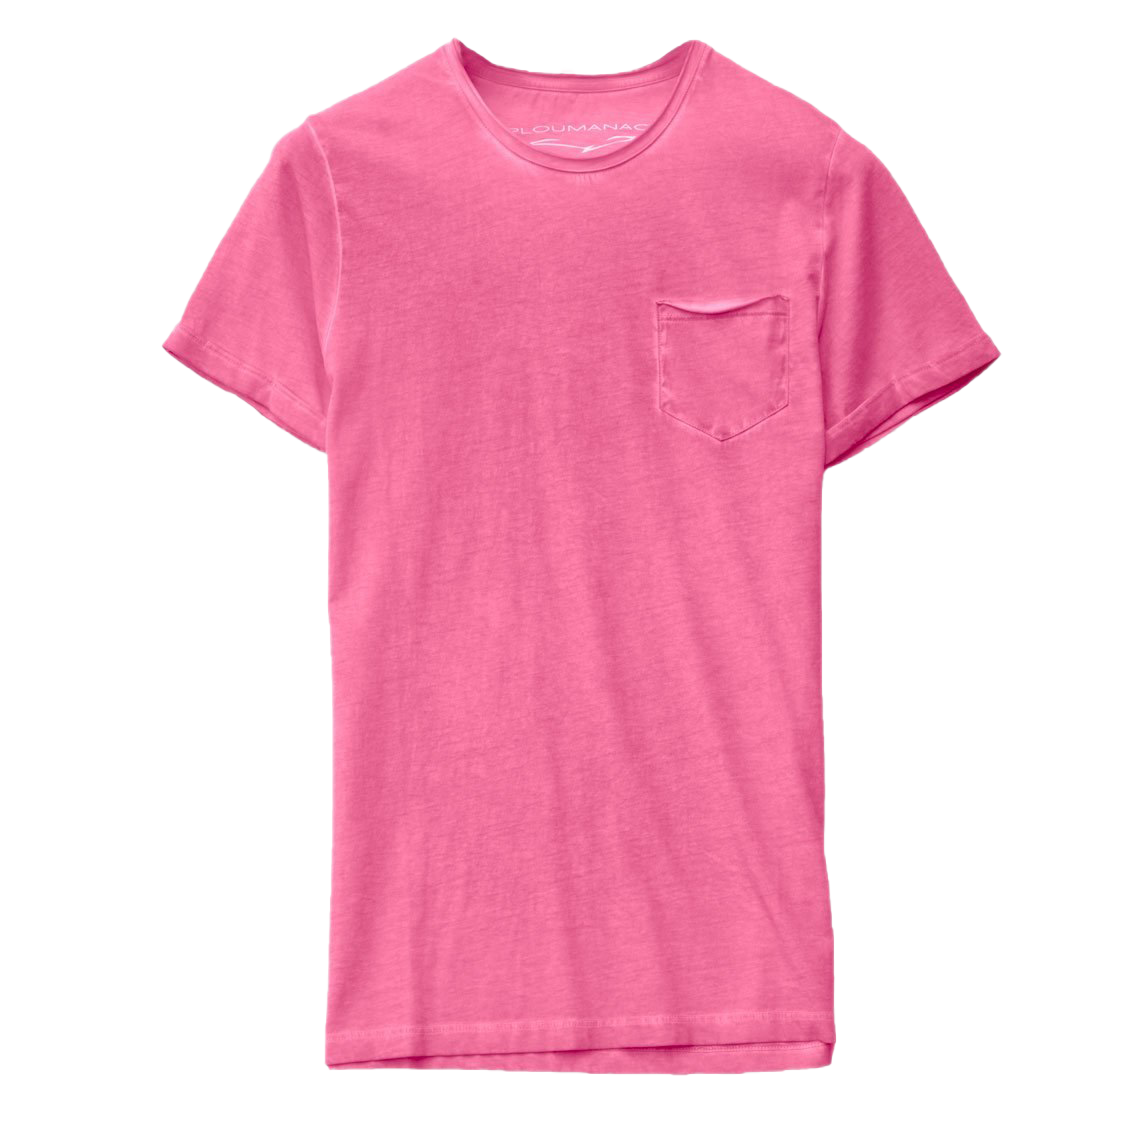 Imagen de PNG de la camiseta rosa llana